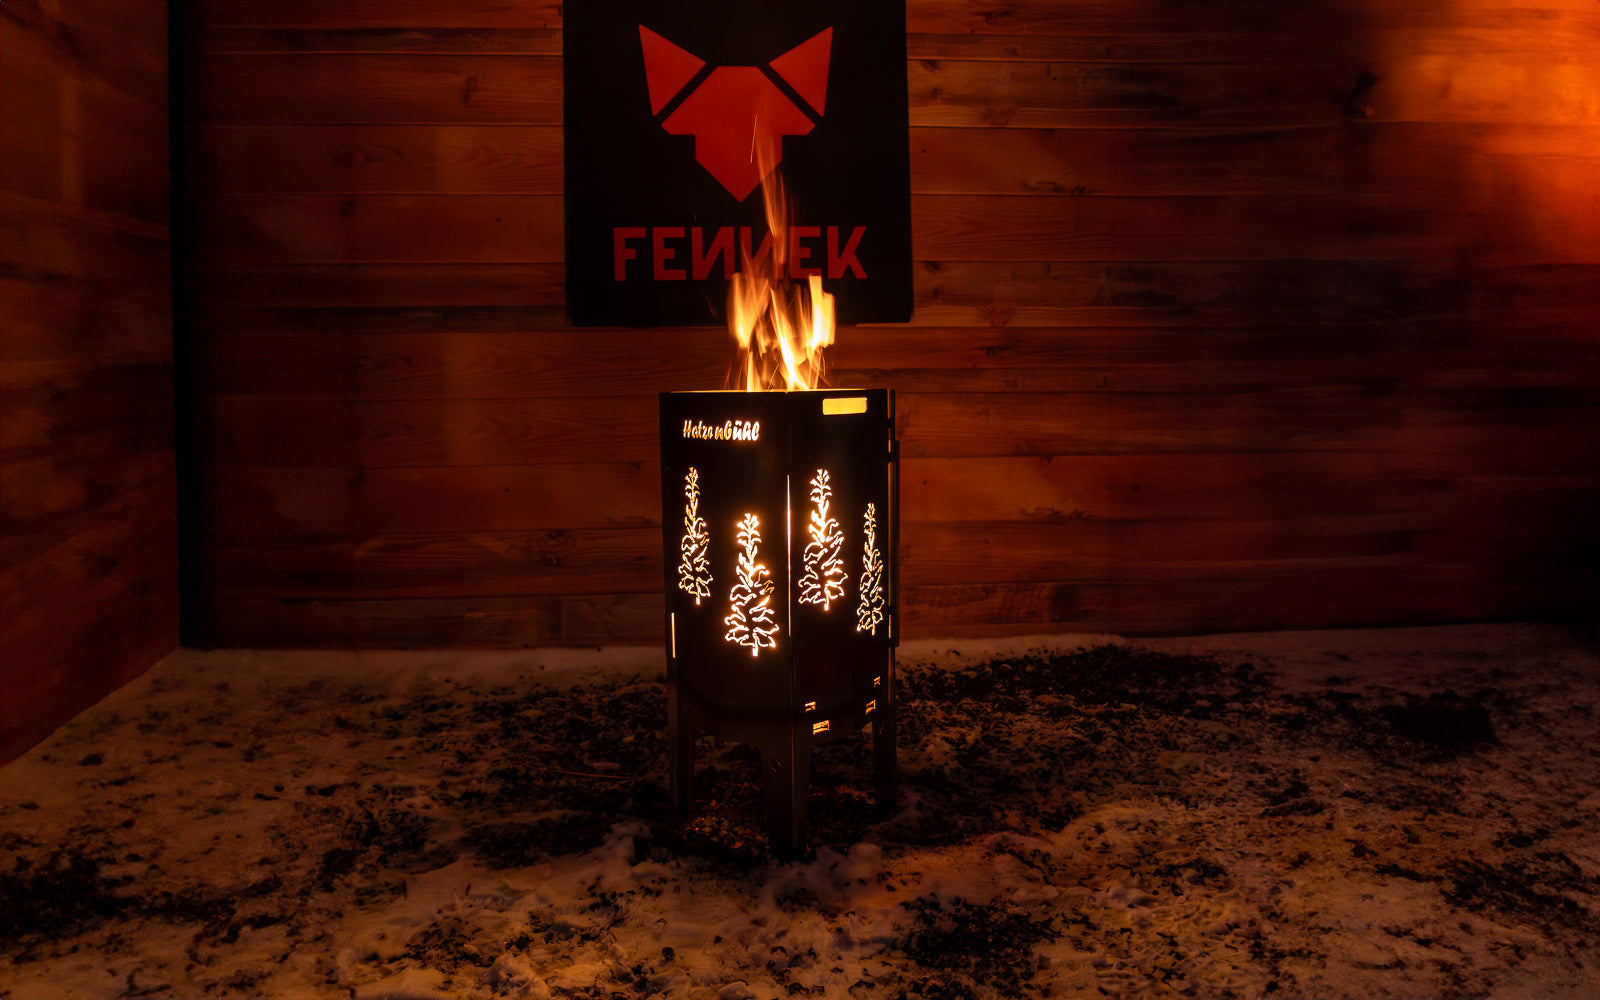 FENNEK Feuersäule Hatzenbühl Edition in Aktion mit schönem loderndem Feuer, das die auf der Feuersäule ausgelaserten Tabakpflanzen von Hatzenbühl erstrahlen lässt.